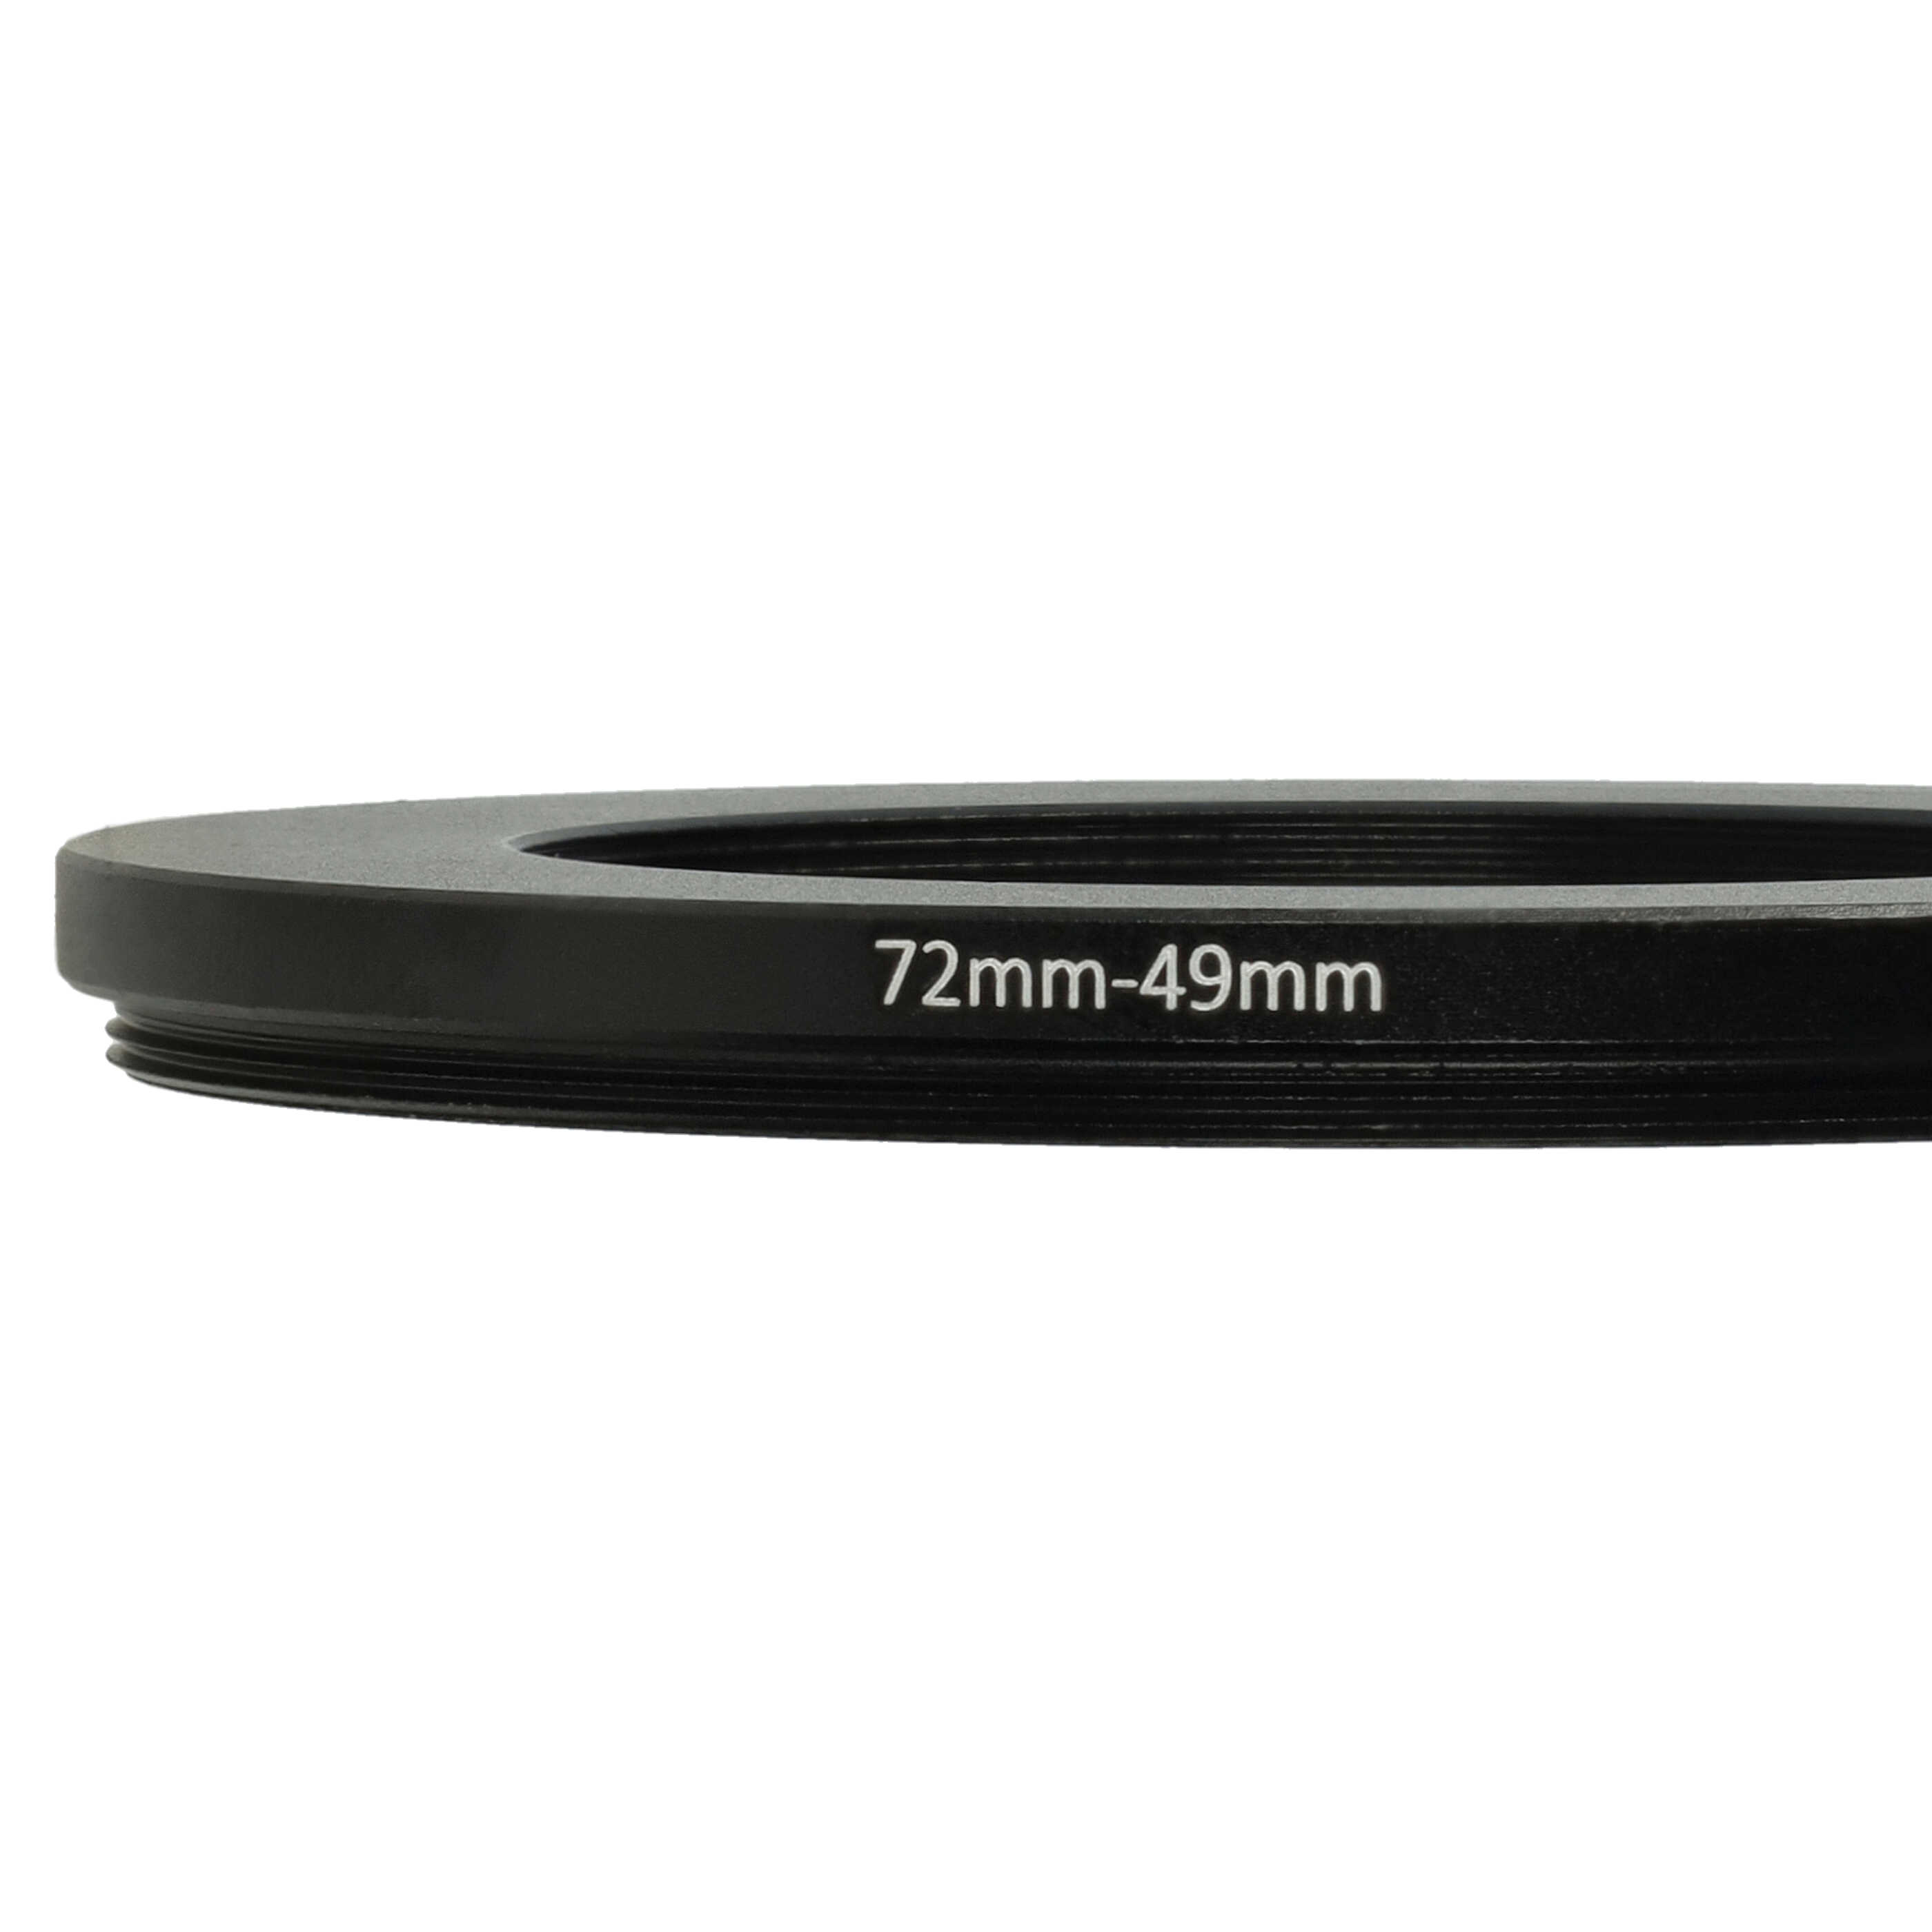 Adattatore step-down da 72 mm a 49 mm per vari obiettivi di fotocamere